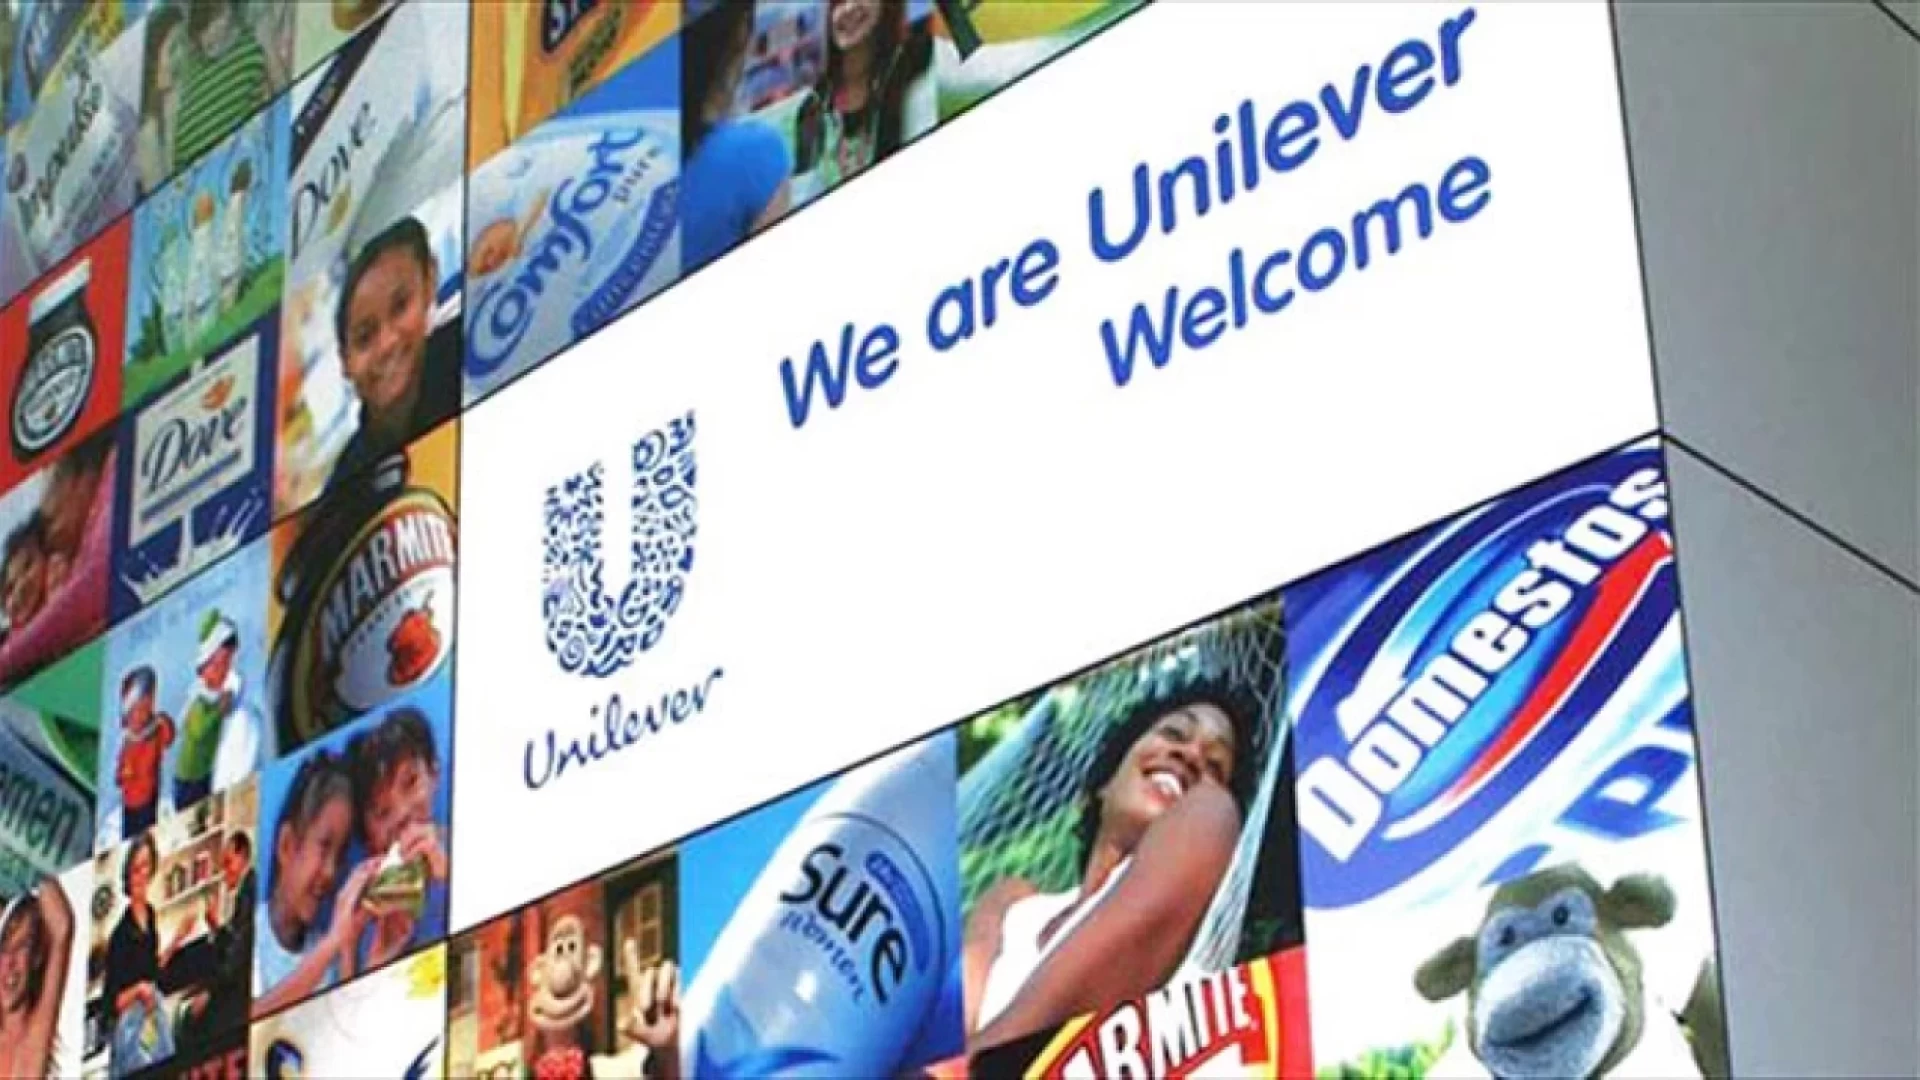 Vertenza Unilever, lunedì sit in a Roma. La nota delle sigle sindacali. "La situazione diventa difficile".